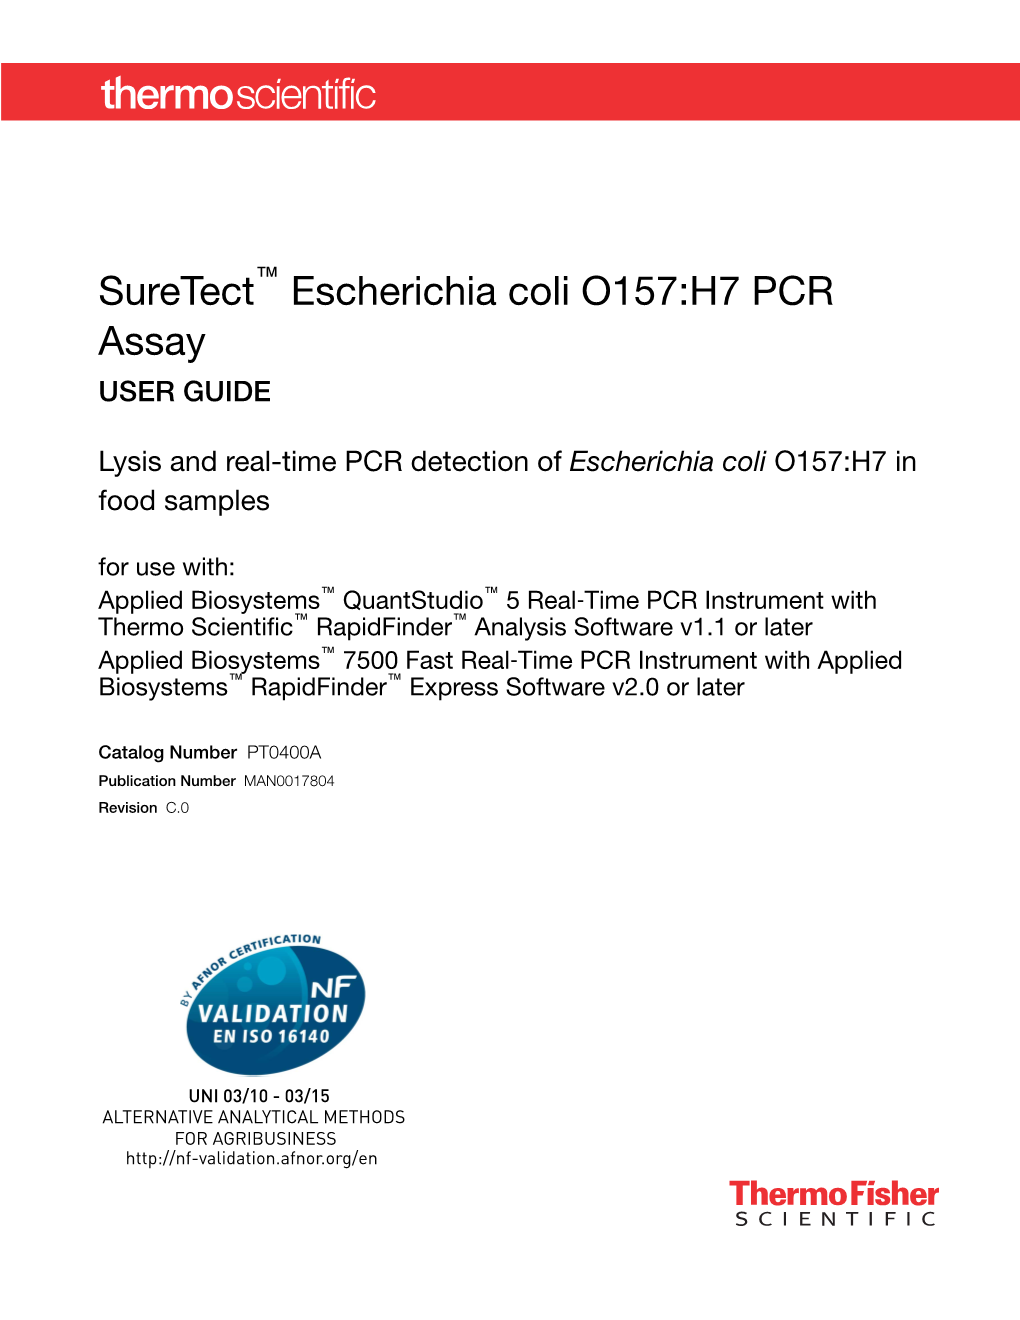 Suretect Escherichia Coli O157:H7 PCR Assay User Guide—AFNOR